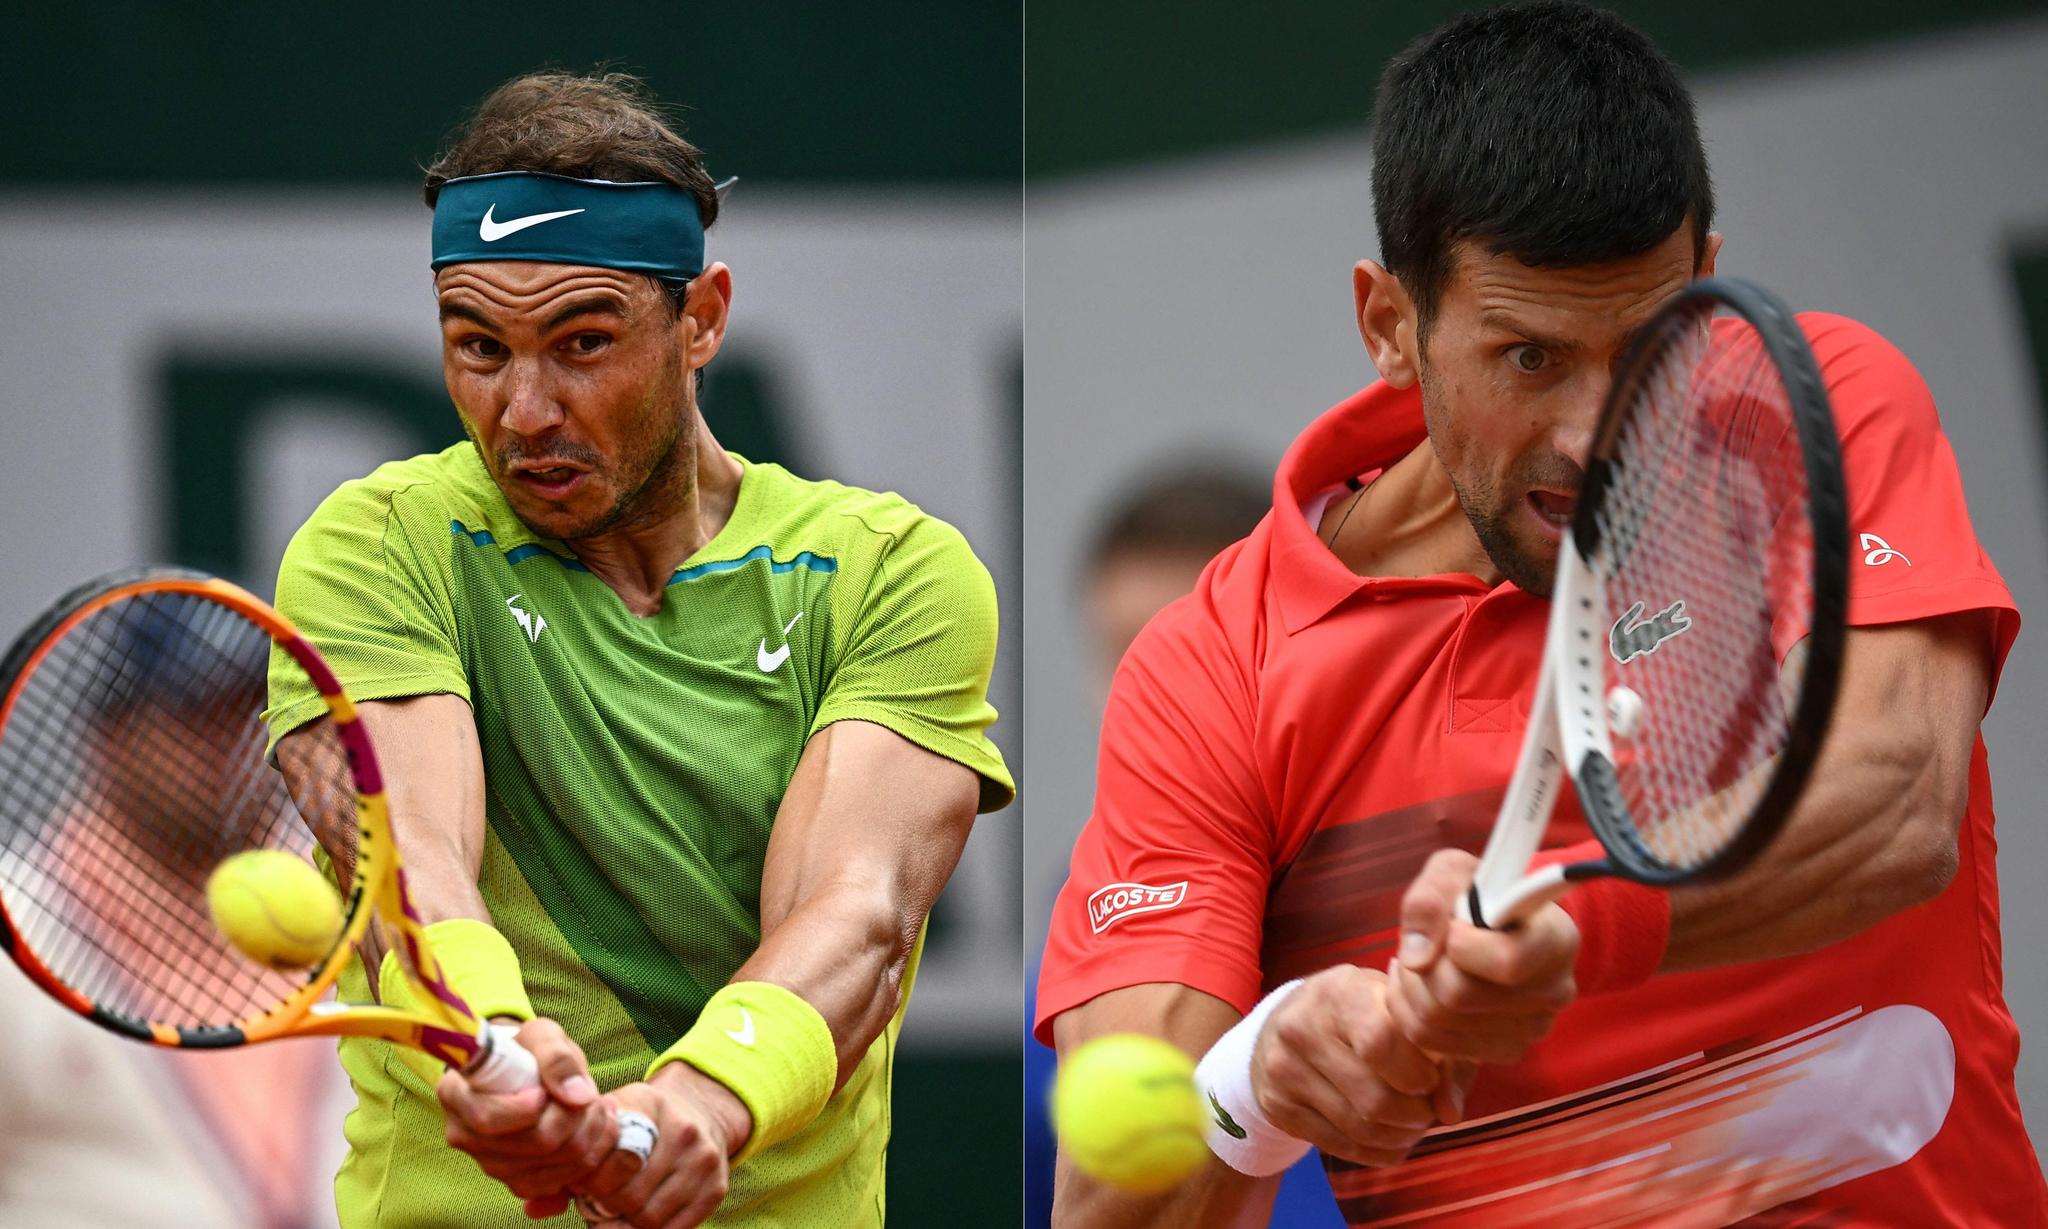 STJERNEDUELL: Rafael Nadal og Novak Djokovic møtes tirsdag kveld. Det er det bare én av dem som er fornøyd med.